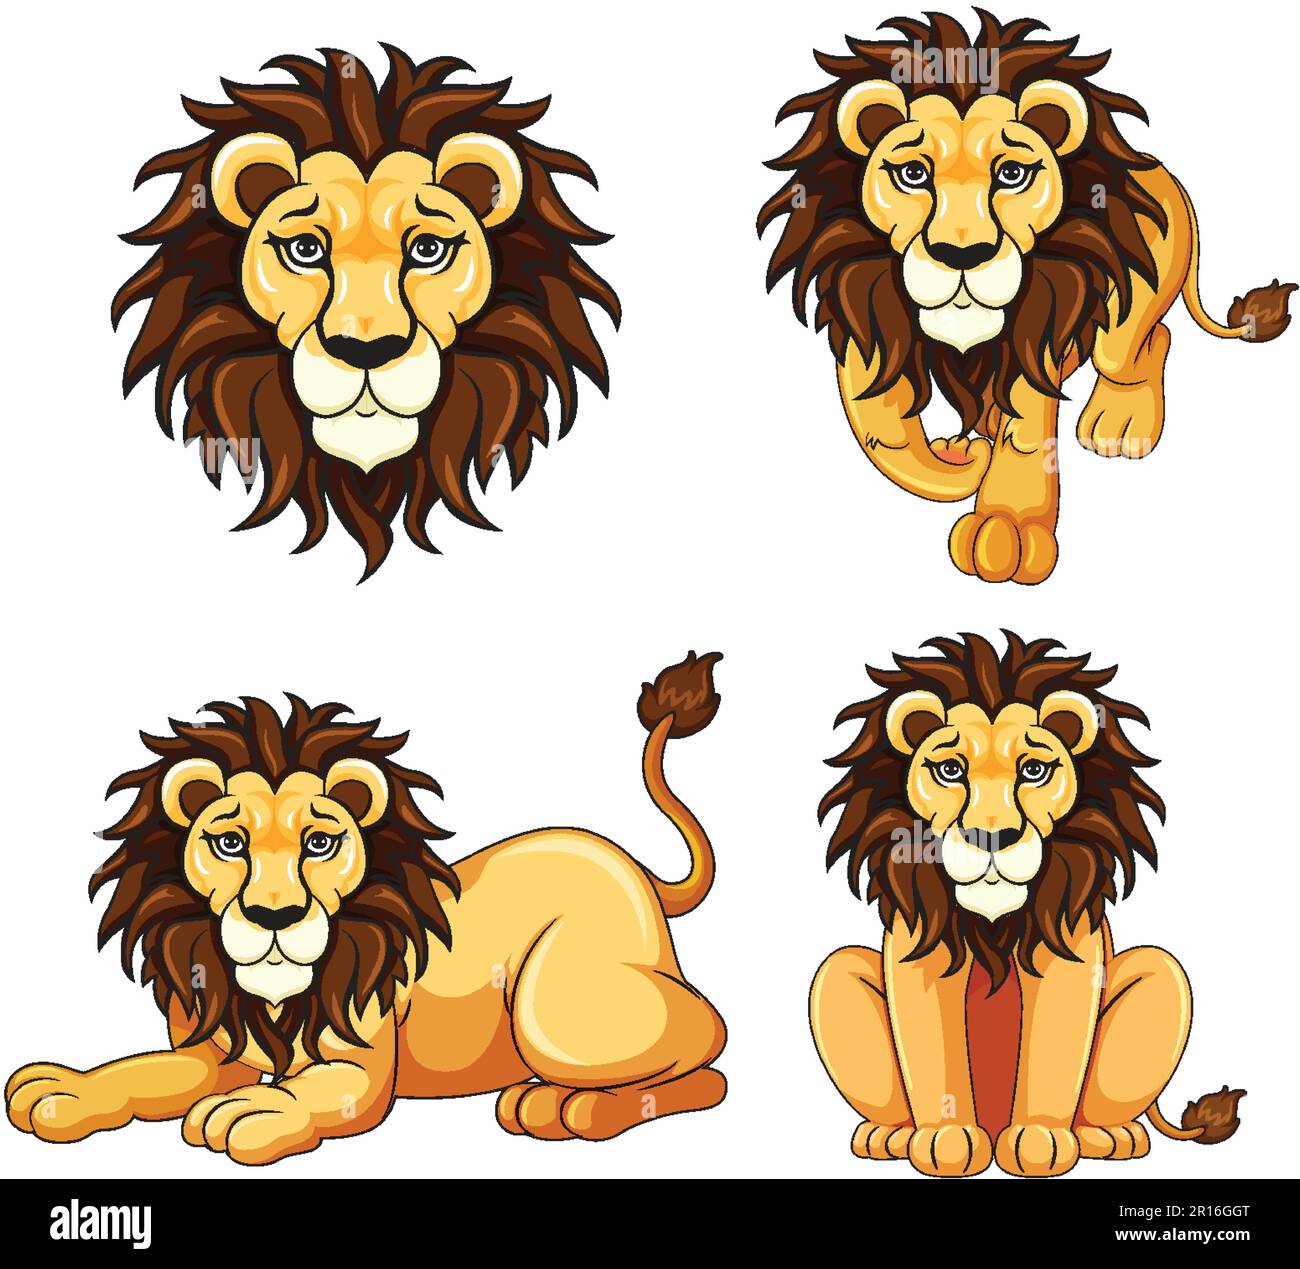 Ensemble de dessin animé lion dans une illustration de posture diffrente Illustration de Vecteur